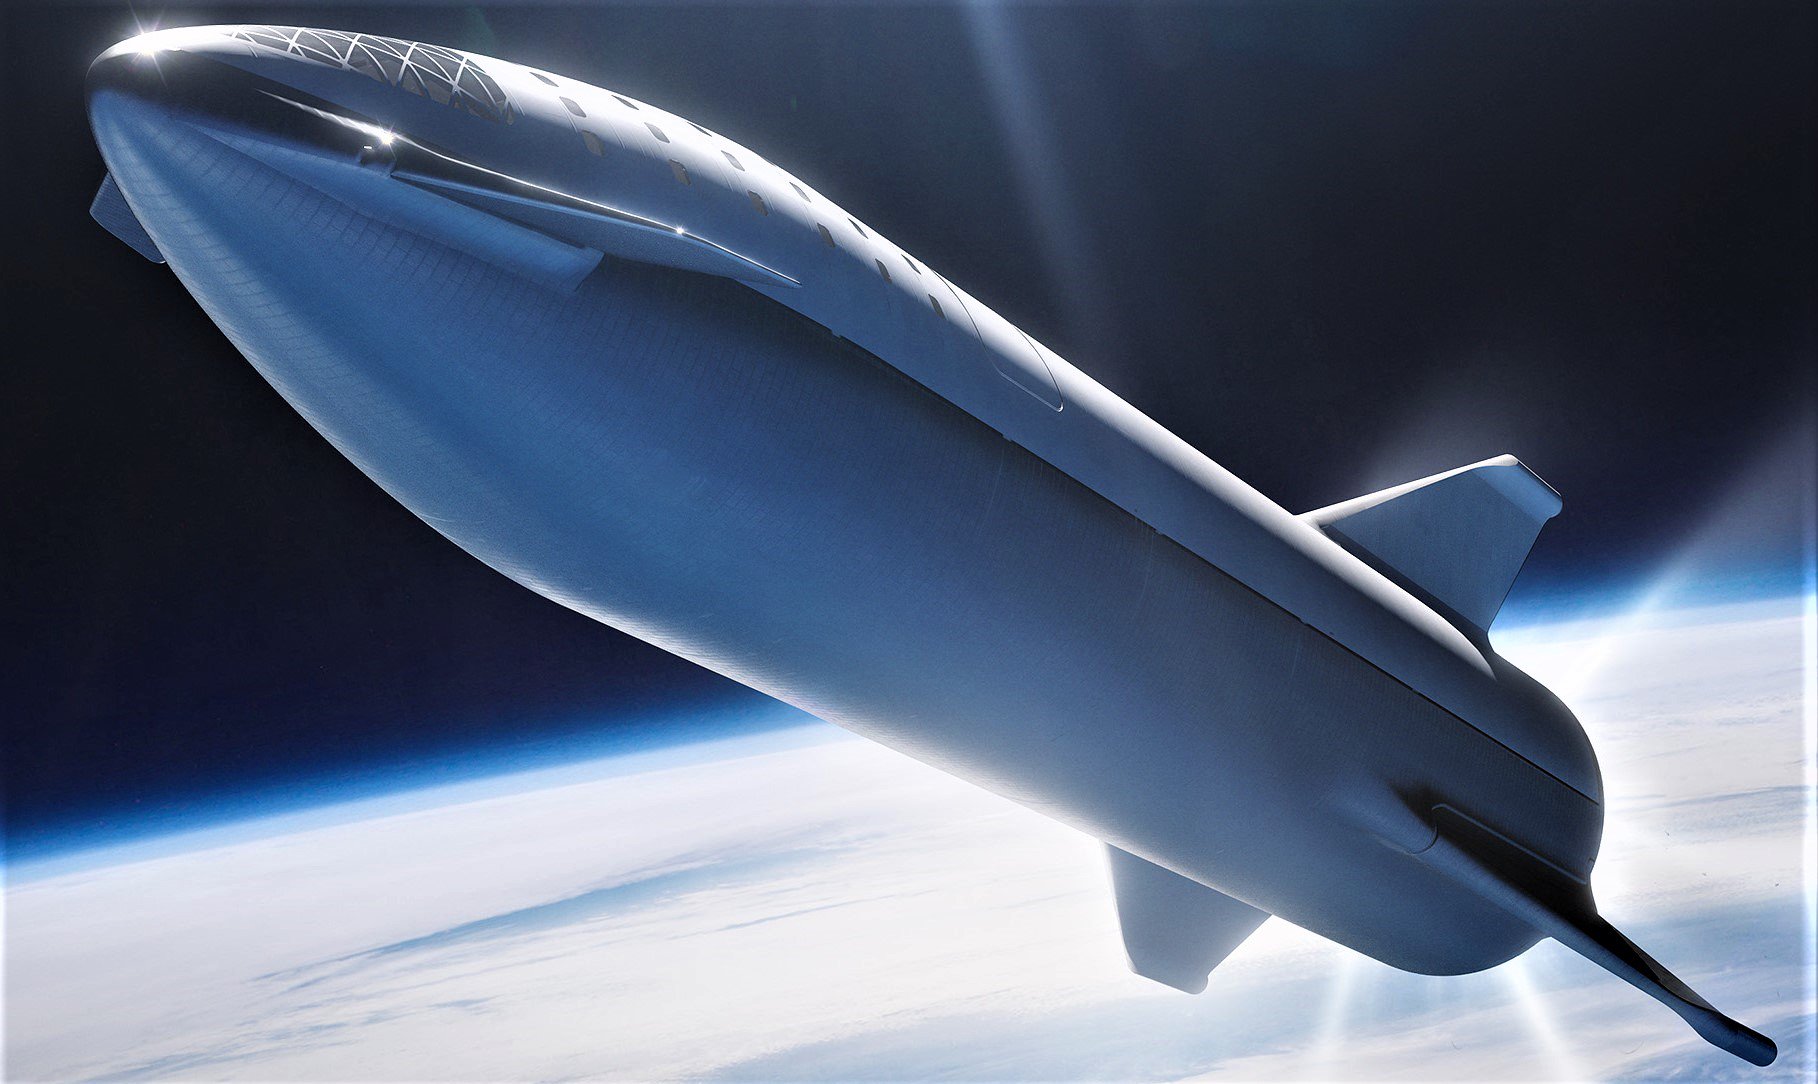 Danach hat ilon Musk zeigte das Concept Test-Starship-Raketen und erzählte über den ersten Start von Dragon Crew